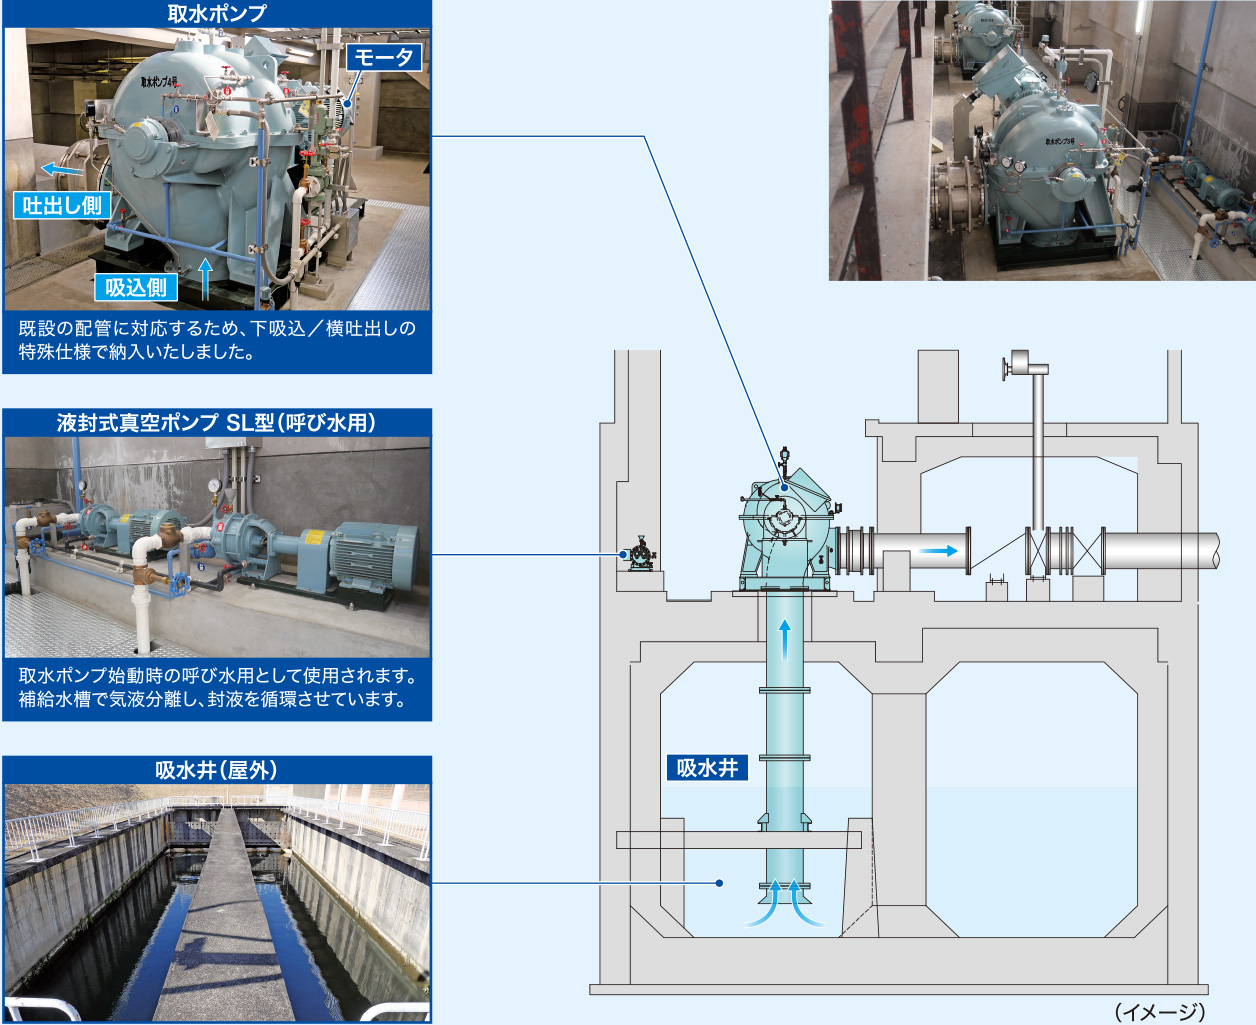 両吸込うず巻ポンプDF-S型の取水ポンプ、液封式真空ポンプSL型（呼び水用）、吸水井のイメージ図